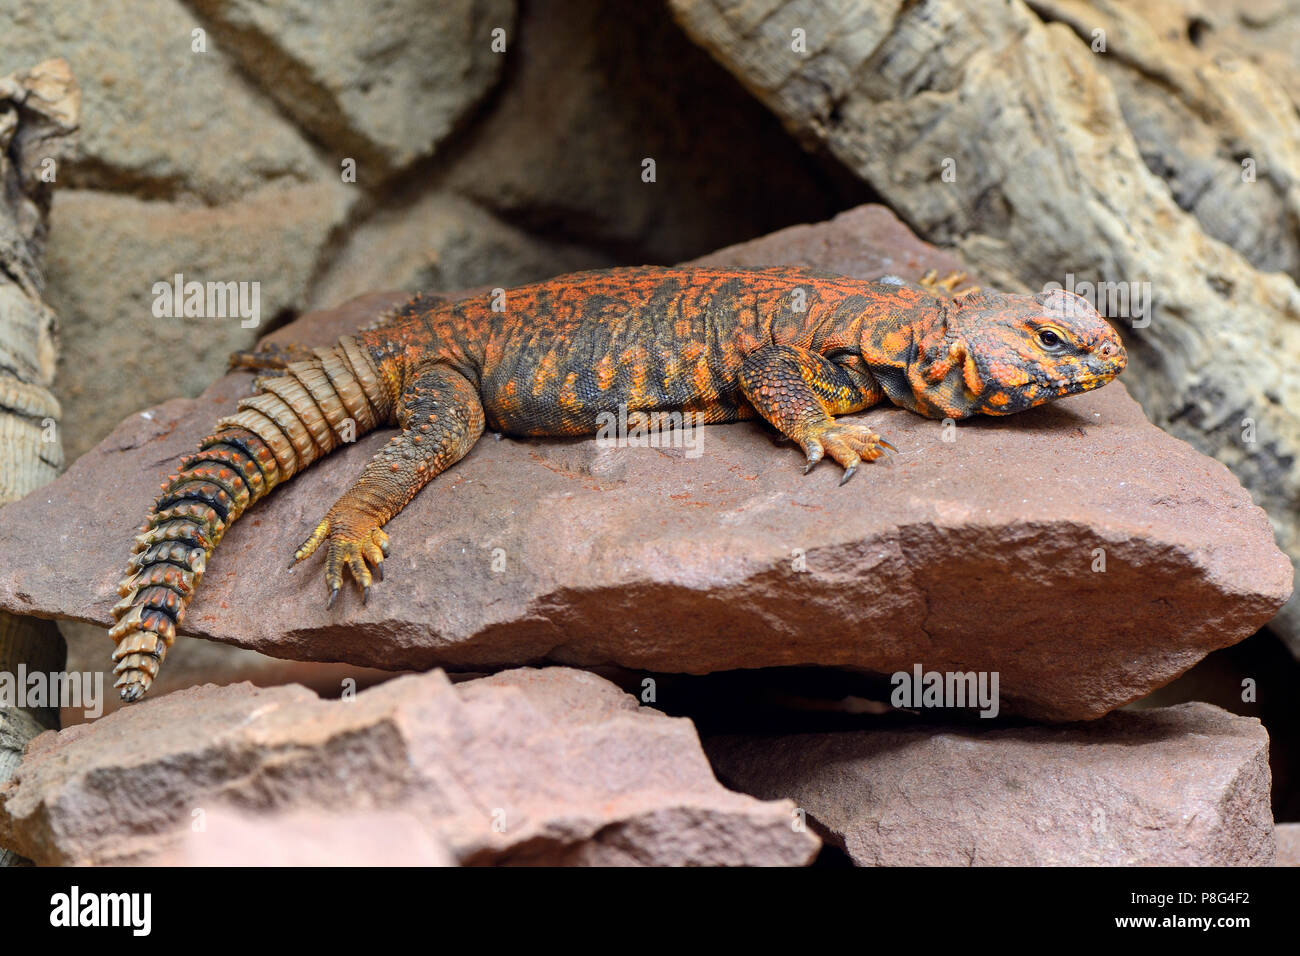 Zentralsahara-Dornschwanz, Nordafrikanische Dornschwanzagame (Uromastyx acanthinurus), captive, Vorkommen Nordafrika Stock Photo